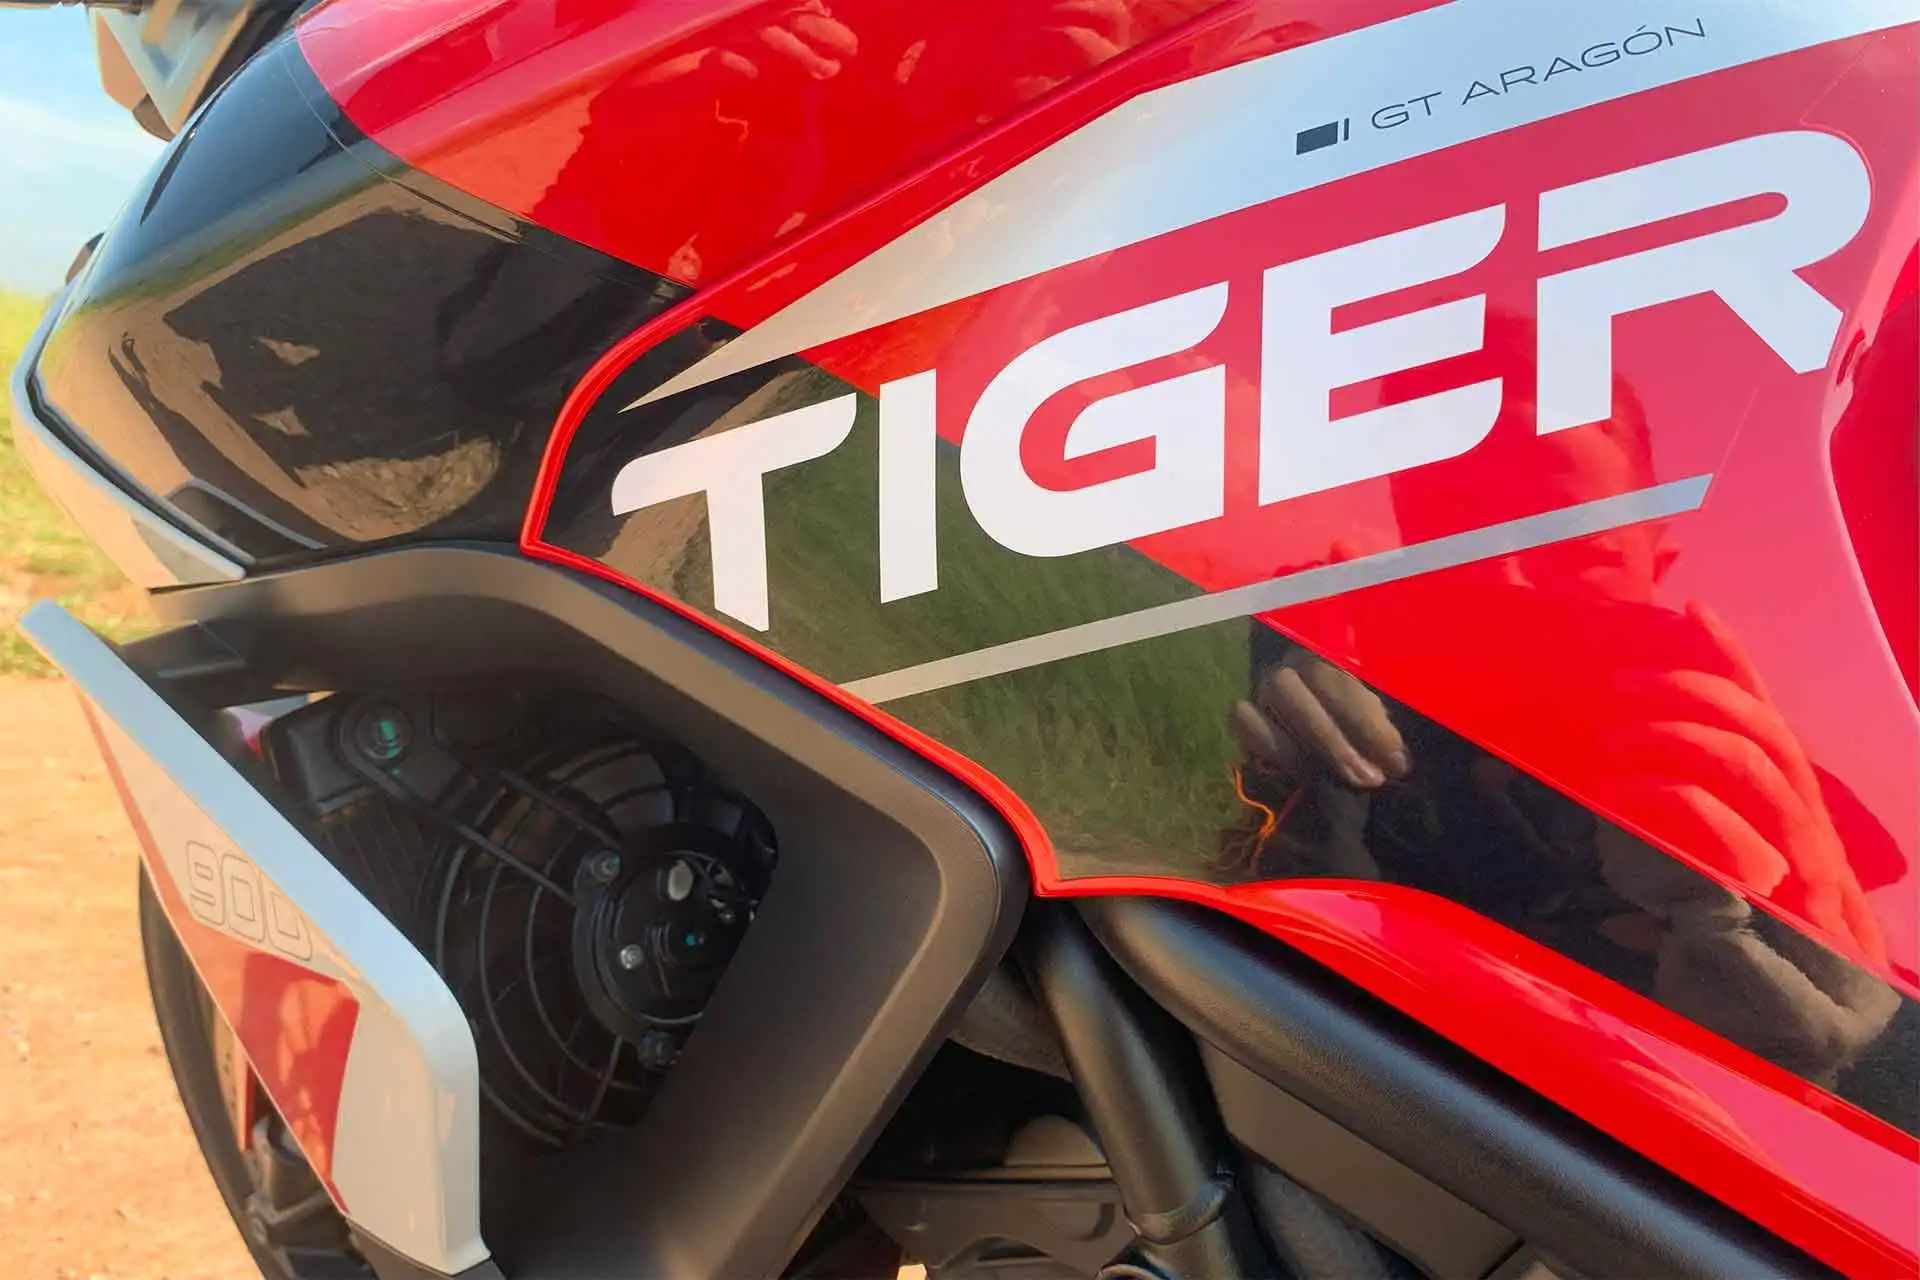 Triumph Tiger 900 Gt Aragon Pintura